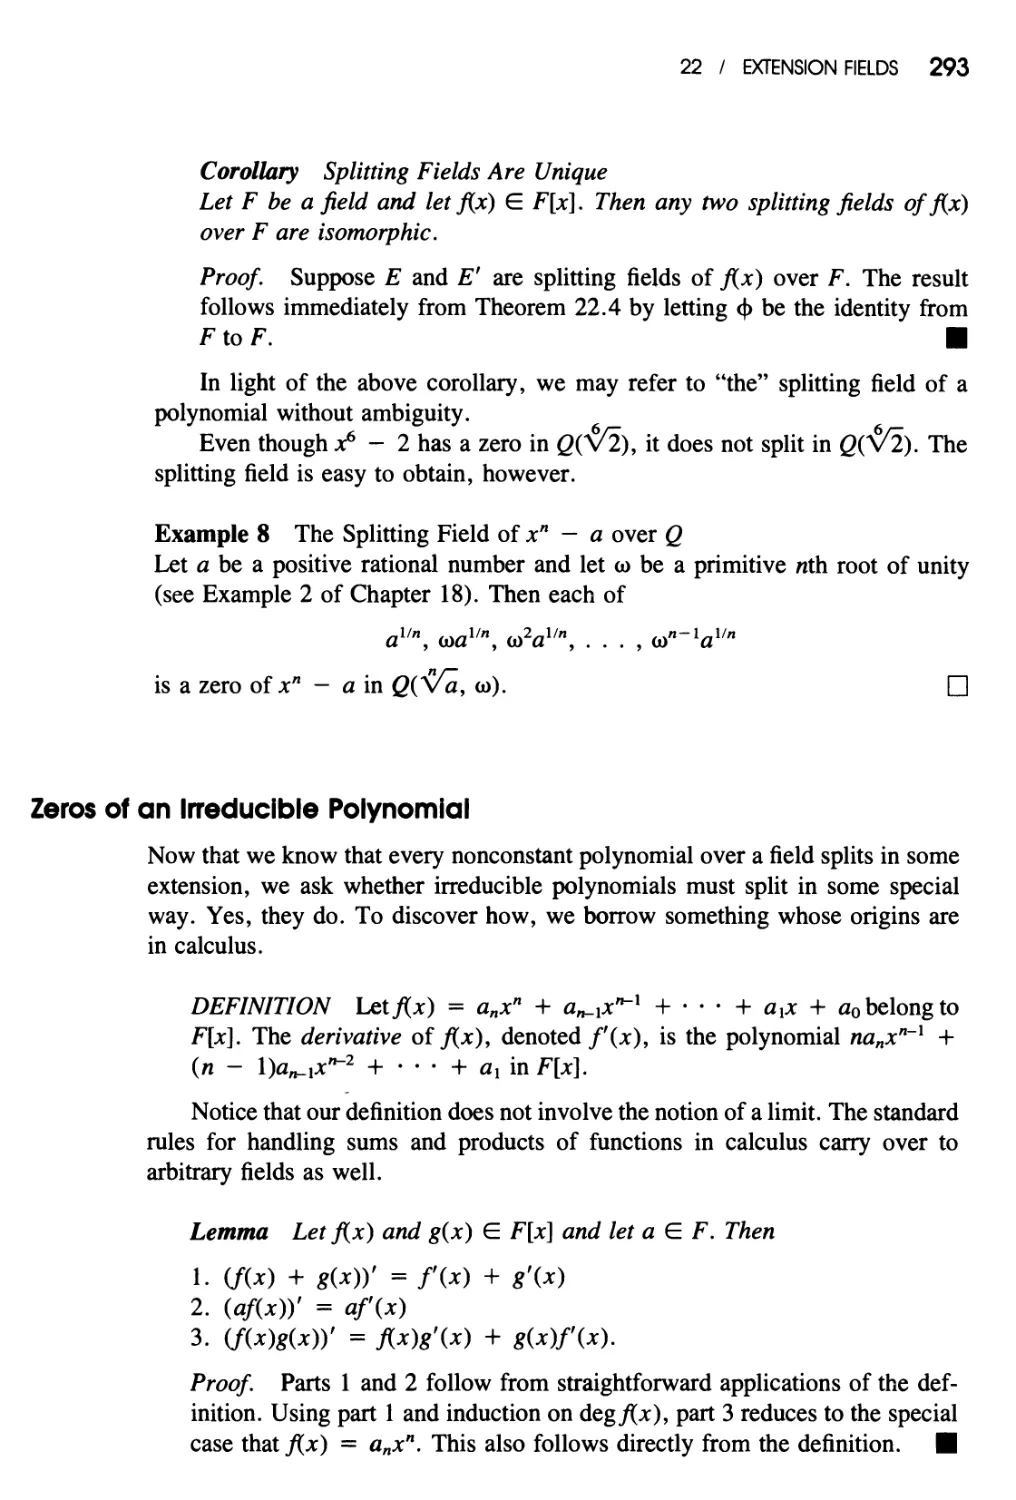 Zeros of an Irreducible Polynomial